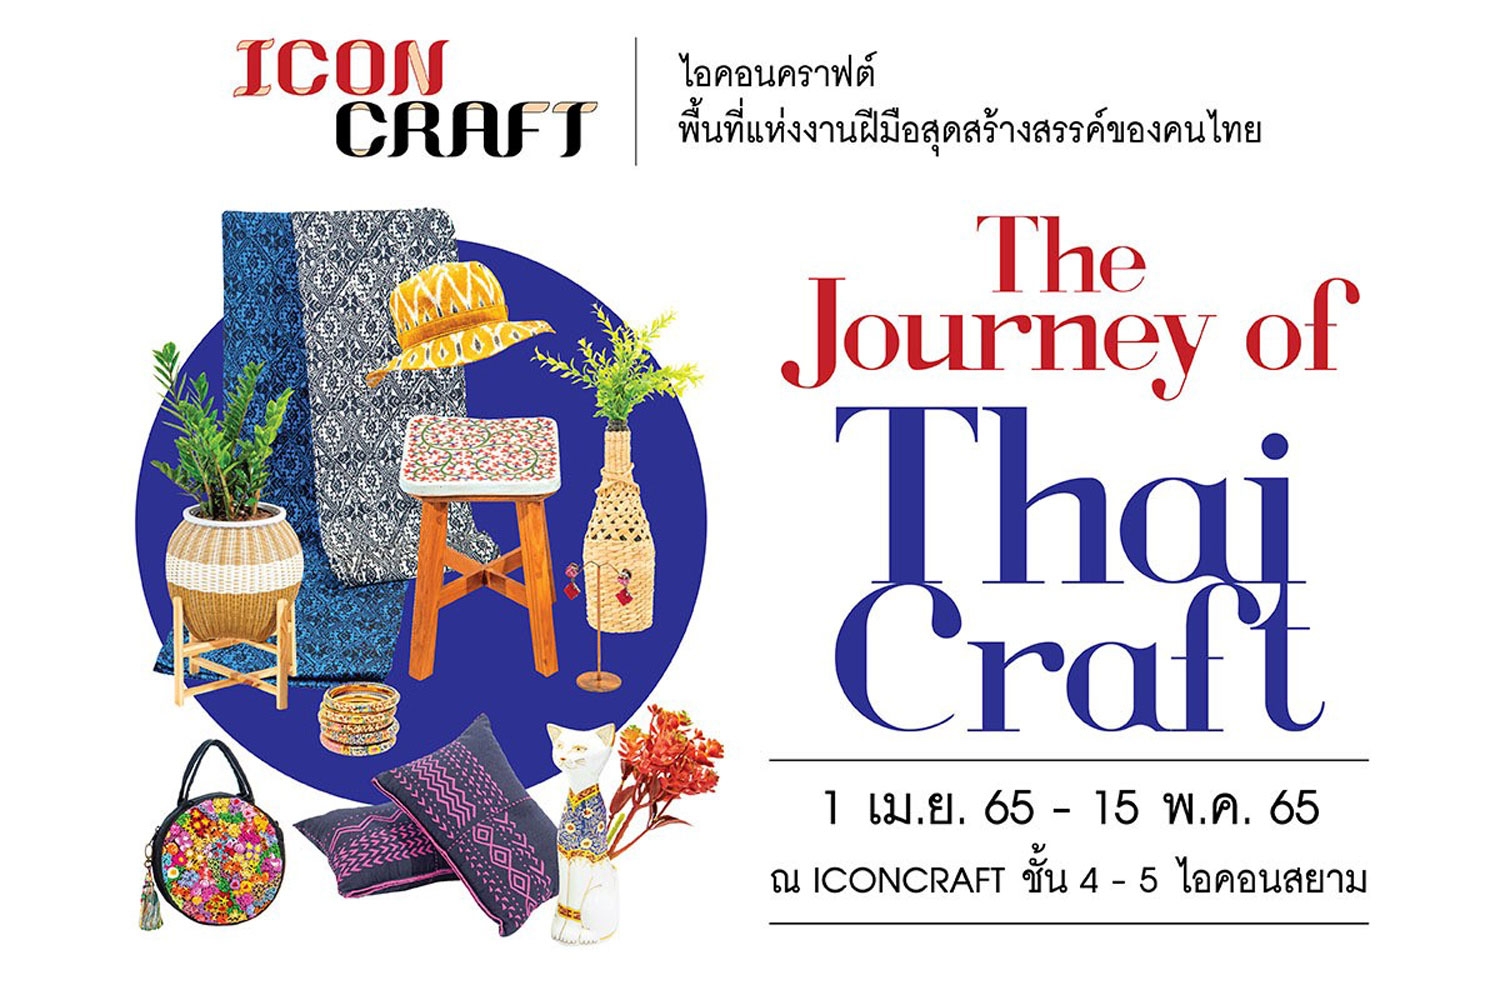 ไอคอนคราฟต์ ชวนทุกคนออกเดินทาง สัมผัสความงานของงานคราฟต์ทั่วประเทศ "The Journey of Thai Craft"